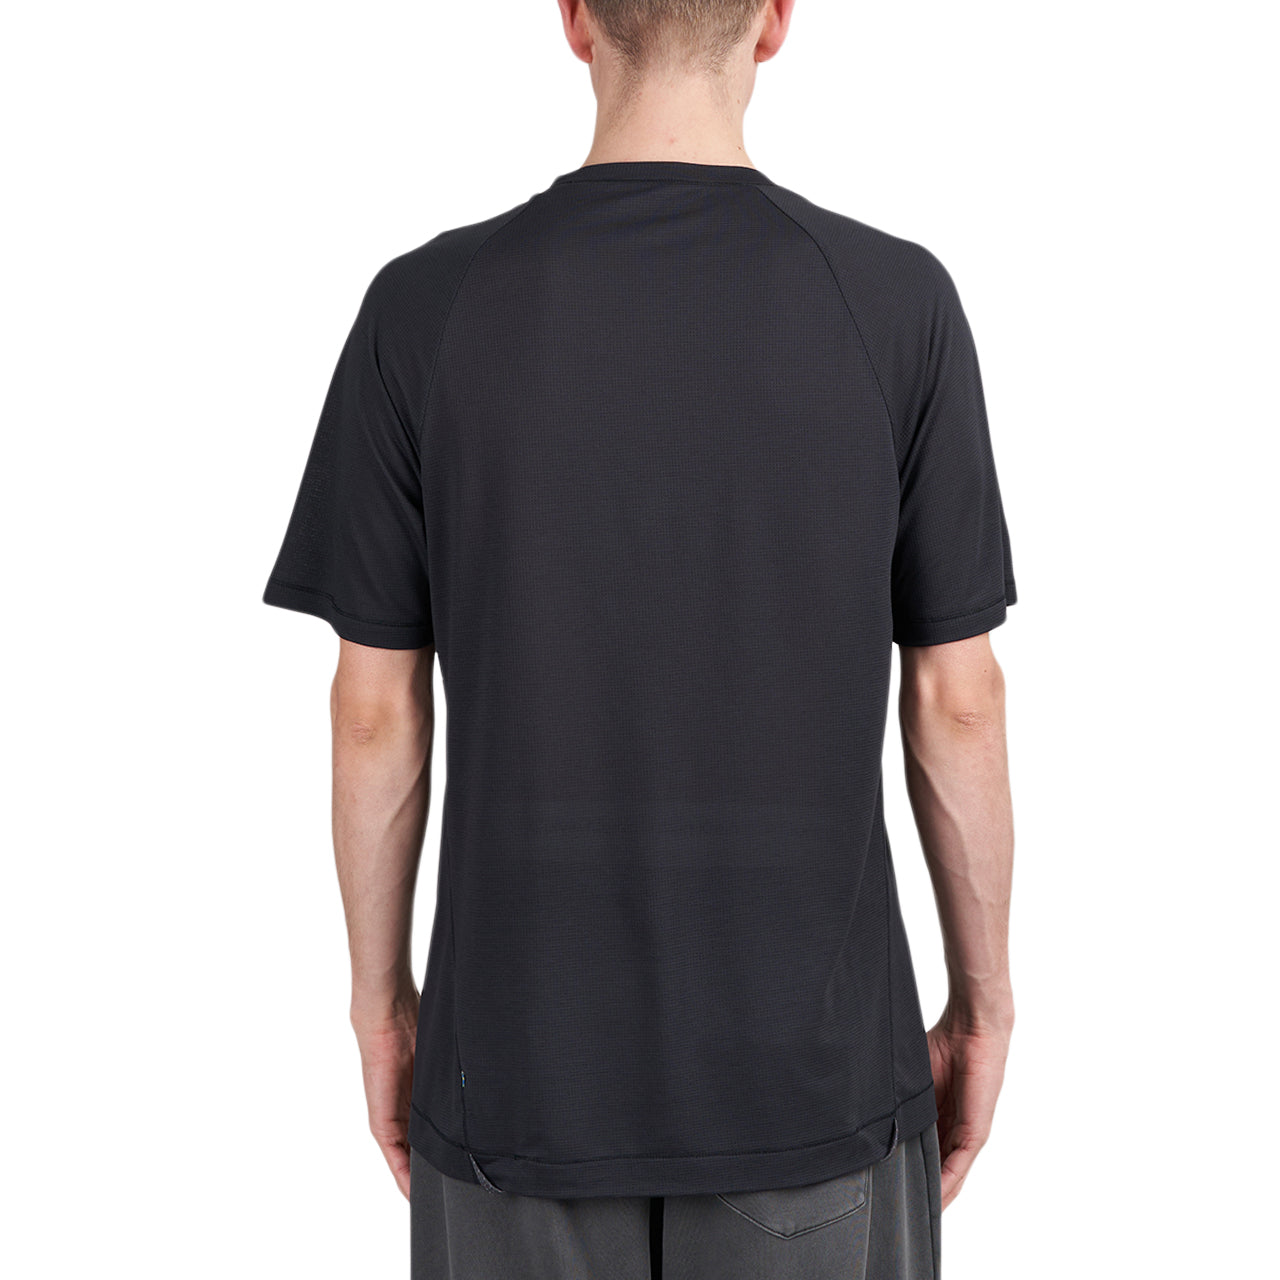 Klättermusen Groa SS Shirt (Dunkelgrau)  - Allike Store